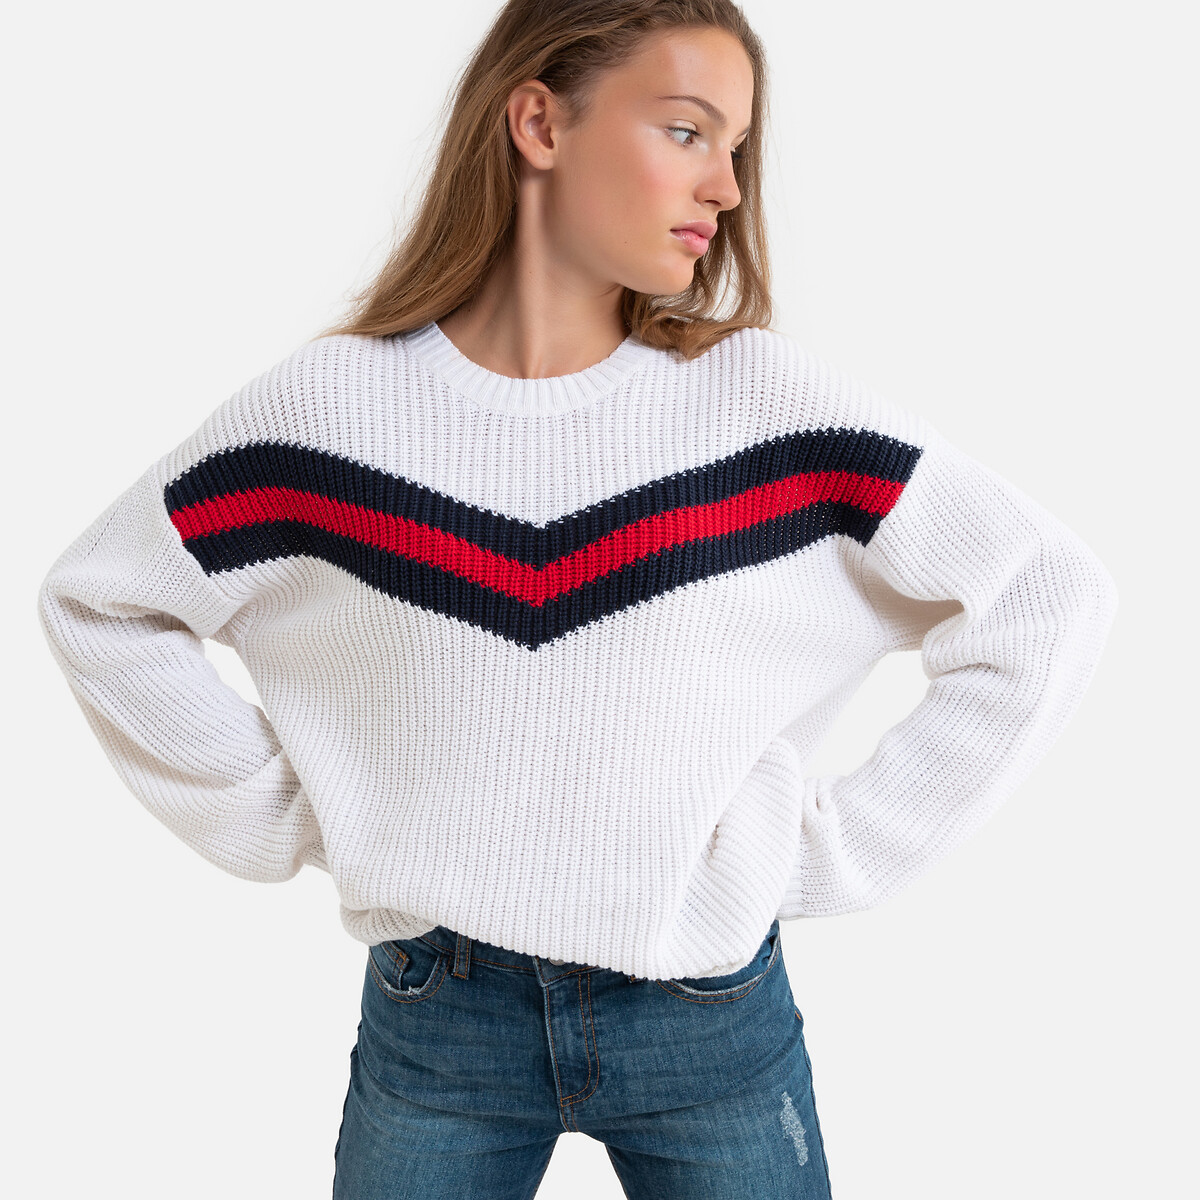 Пуловер La Redoute С круглым вырезом из плотного трикотажа  14 лет - 156 см белый, размер 14 лет - 156 см